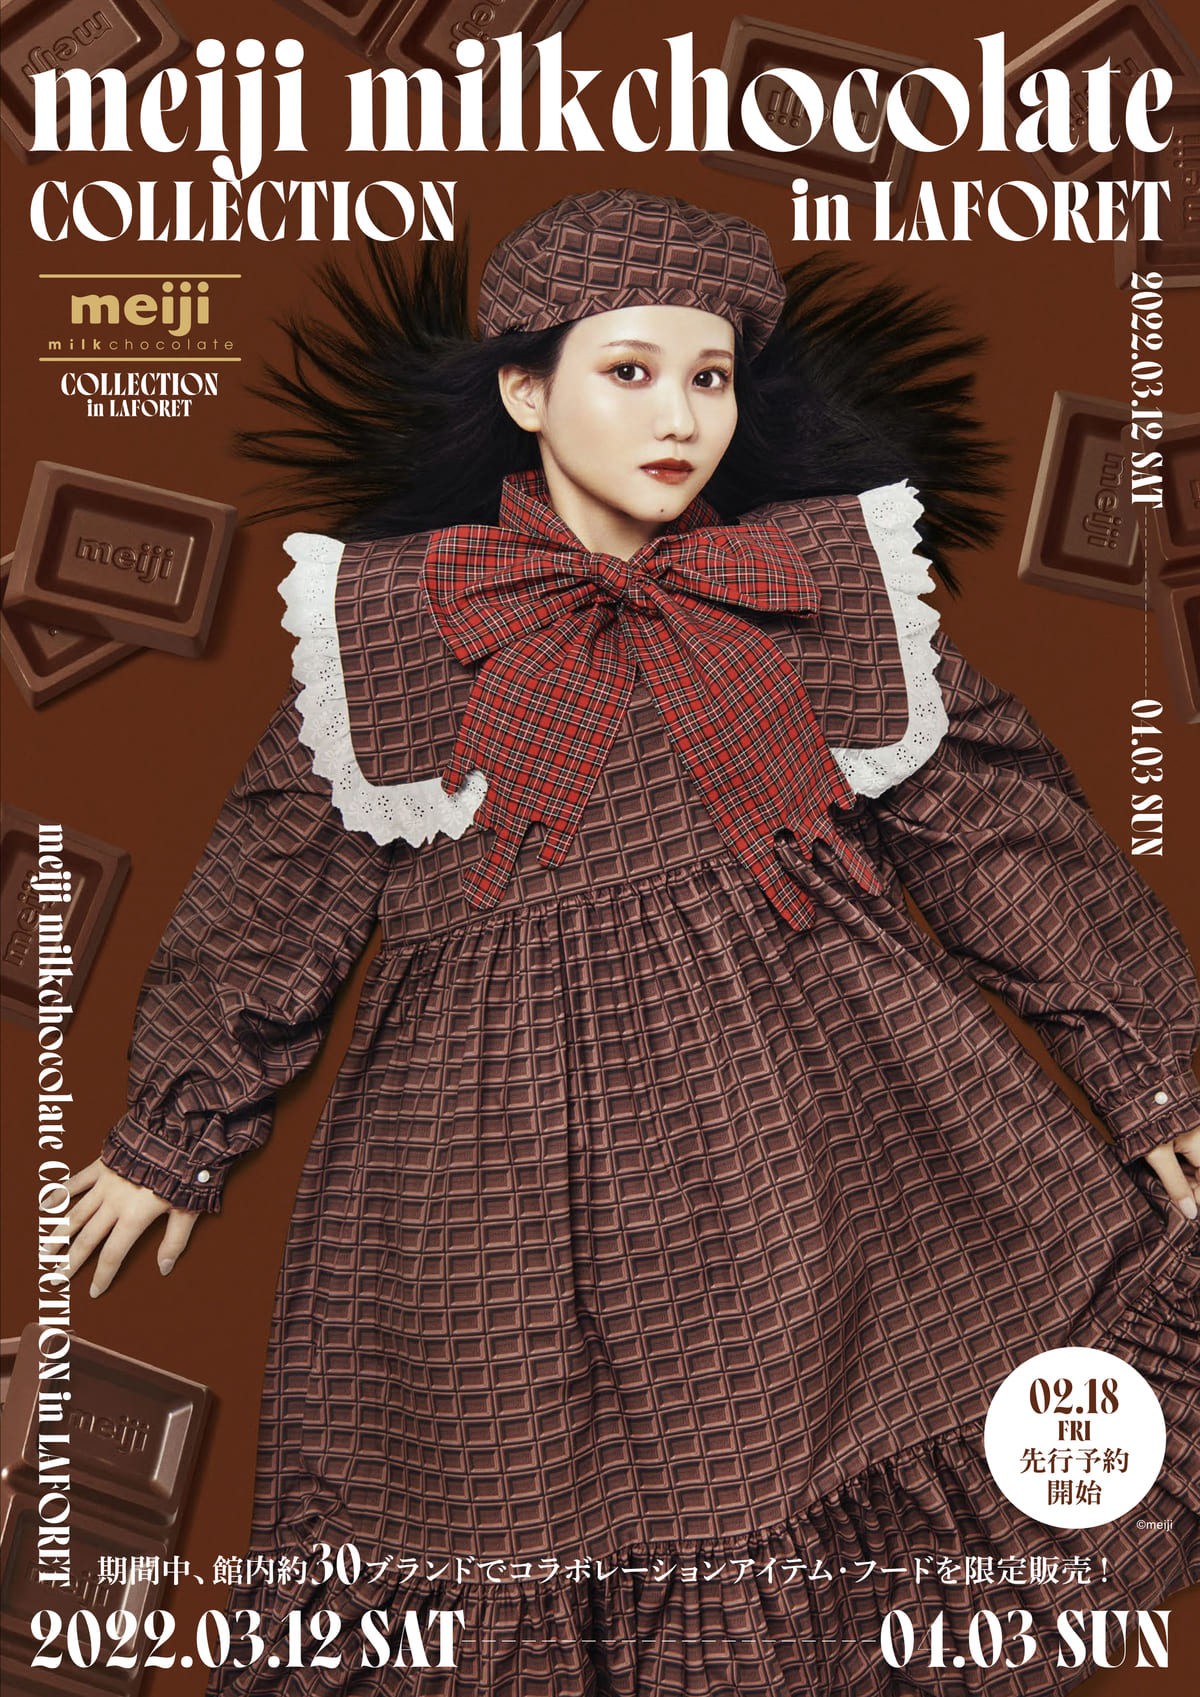 ラフォーレ原宿「meiji milkchocolate COLLECTION in LAFORET」